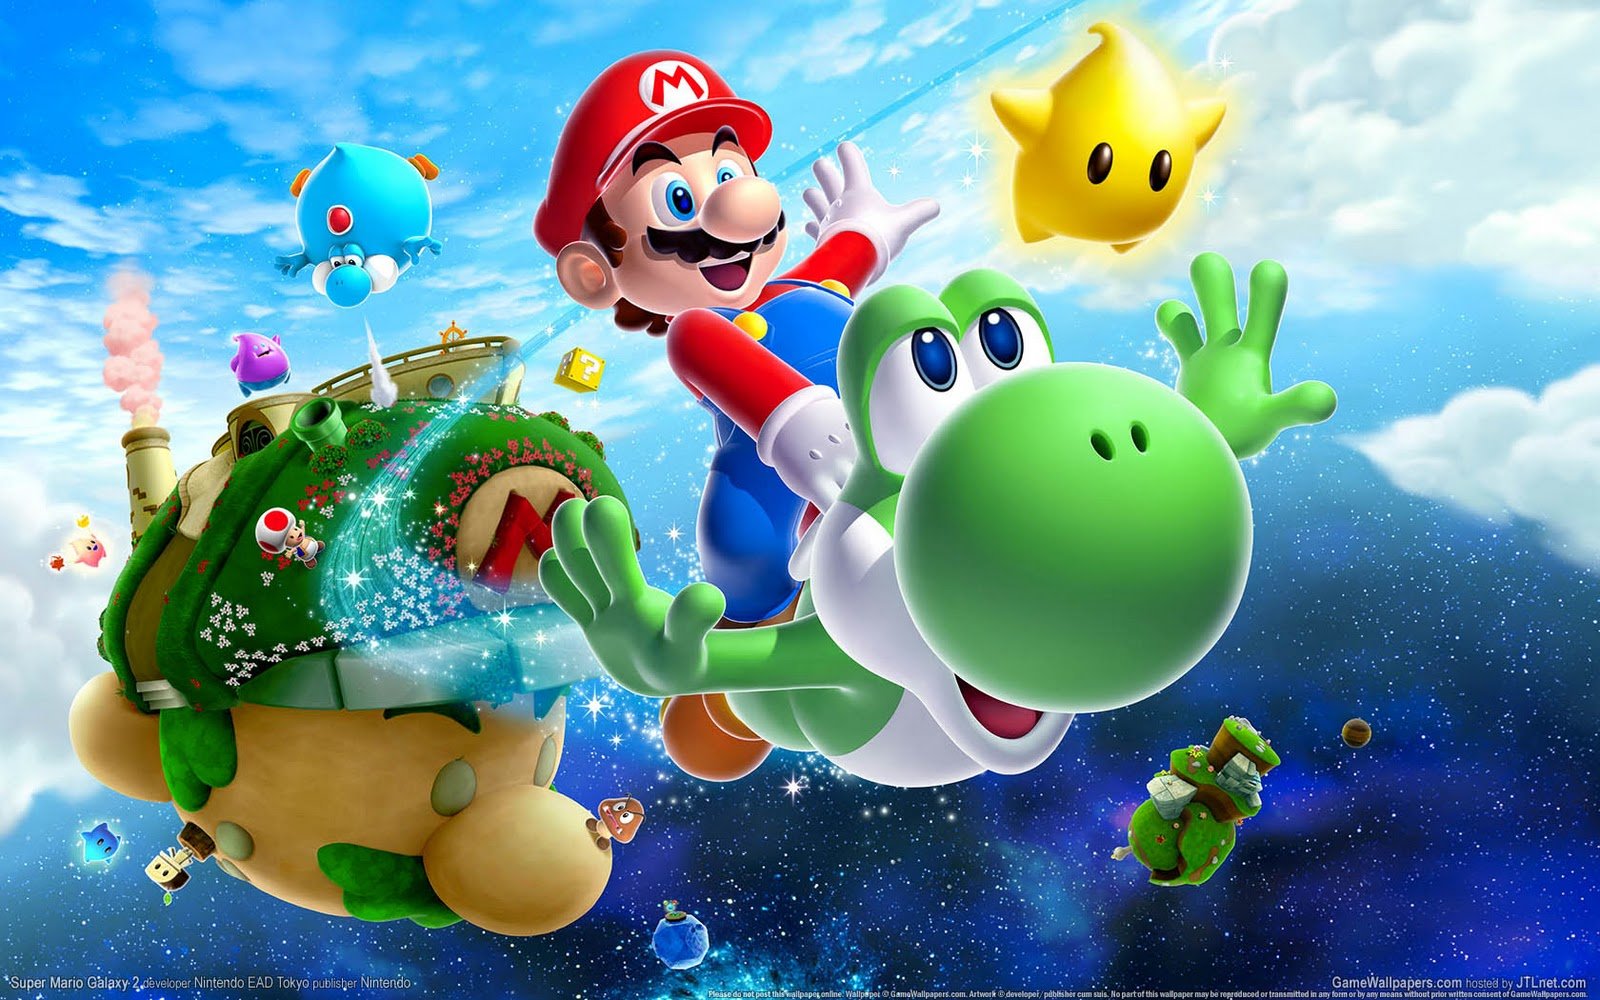 30 anos de Super Mario Bros.: nostalgia, magia e diversão de sobra